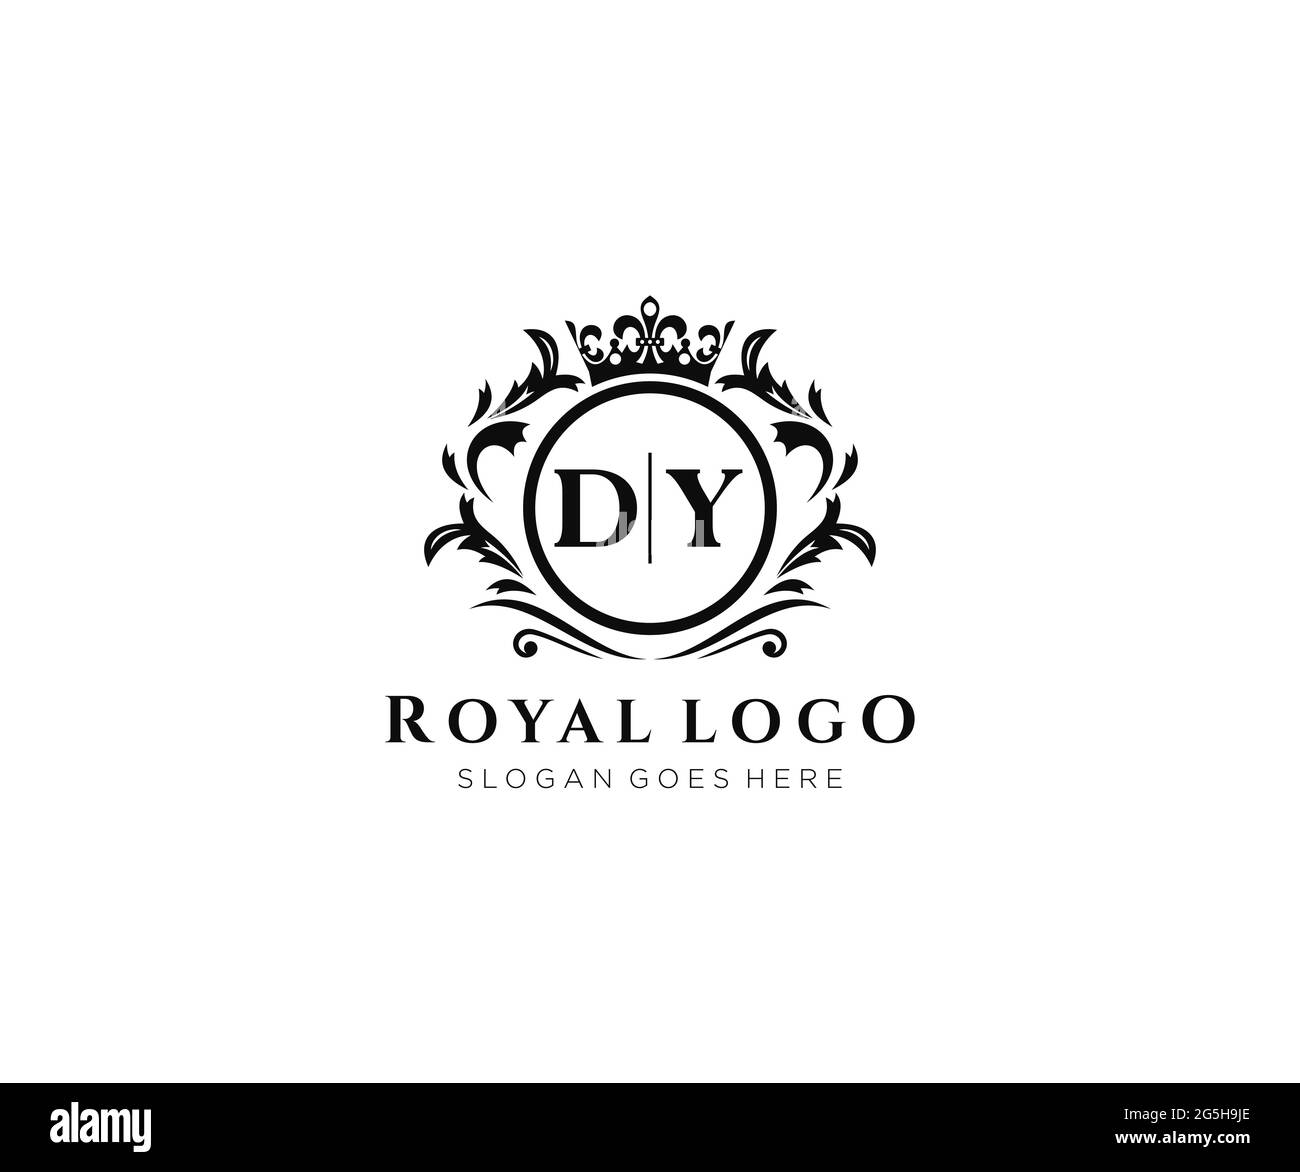 DY Letter Luxurious Brand Logo Template, für Restaurant, Royalty, Boutique, Cafe, Hotel, Wappentisch, Schmuck, Mode und andere Vektorgrafik. Stock Vektor